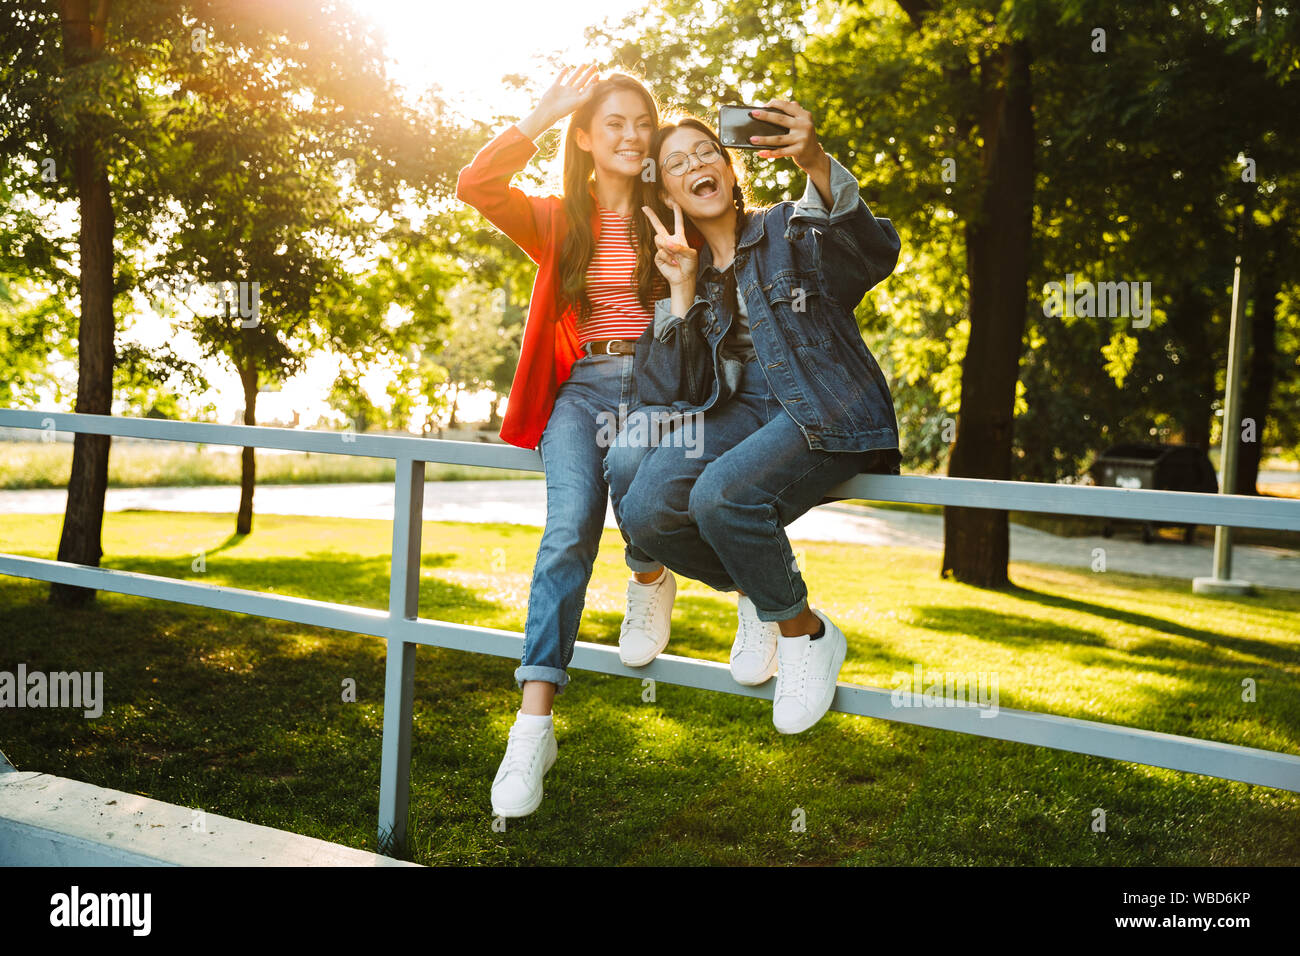 Image de deux élèves filles heureux de prendre photo sur téléphone portable et selfies gesturing while sitting on chanter la paix railing in green park Banque D'Images